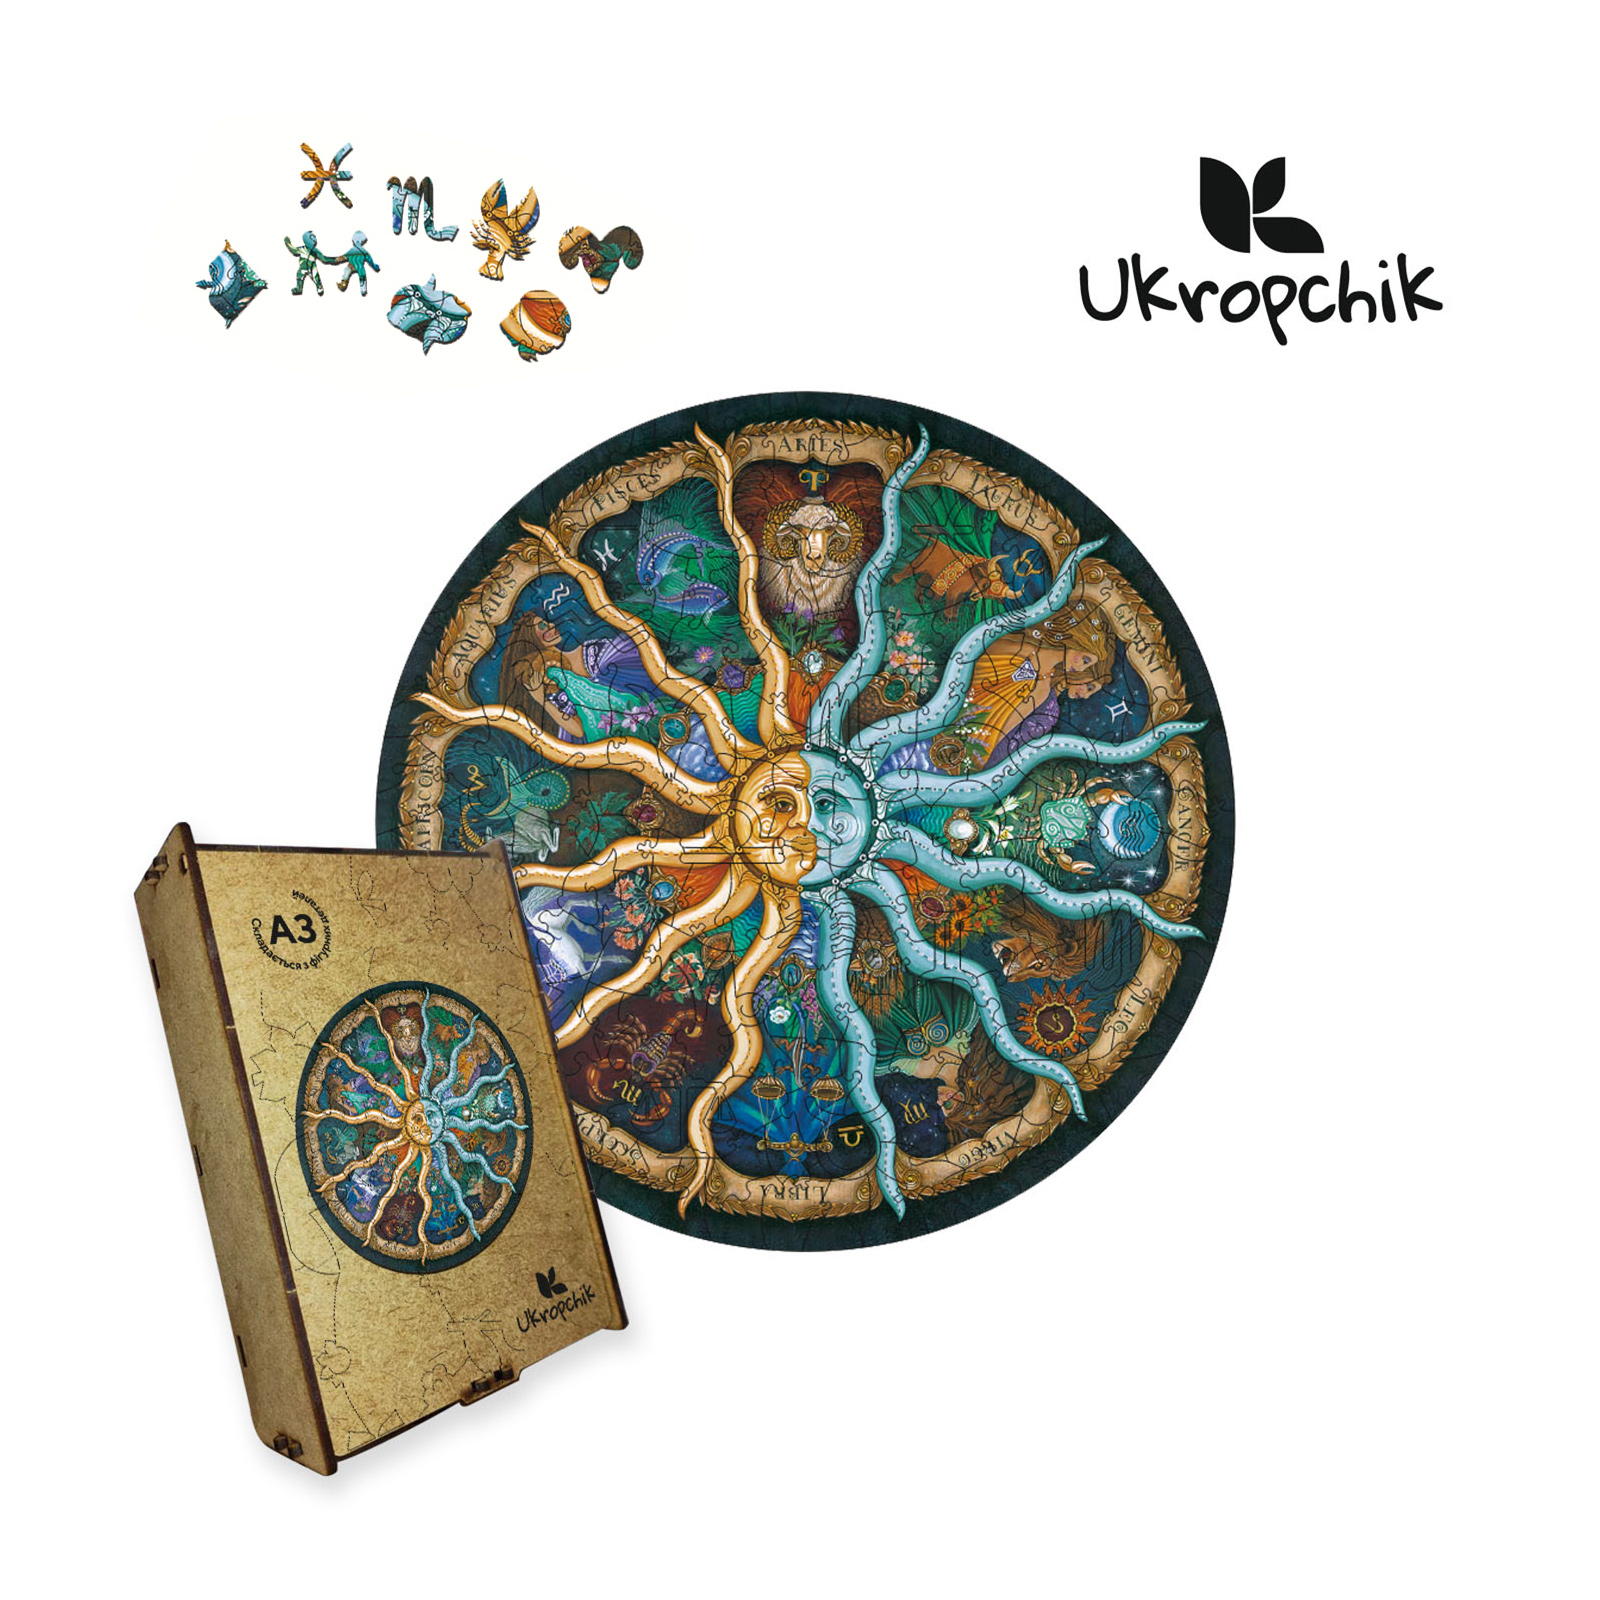 Пазл Ukropchik деревянный Таинственный Зодиак size - L в коробке с набором-рамкой (Mysterious Zodiac A3)